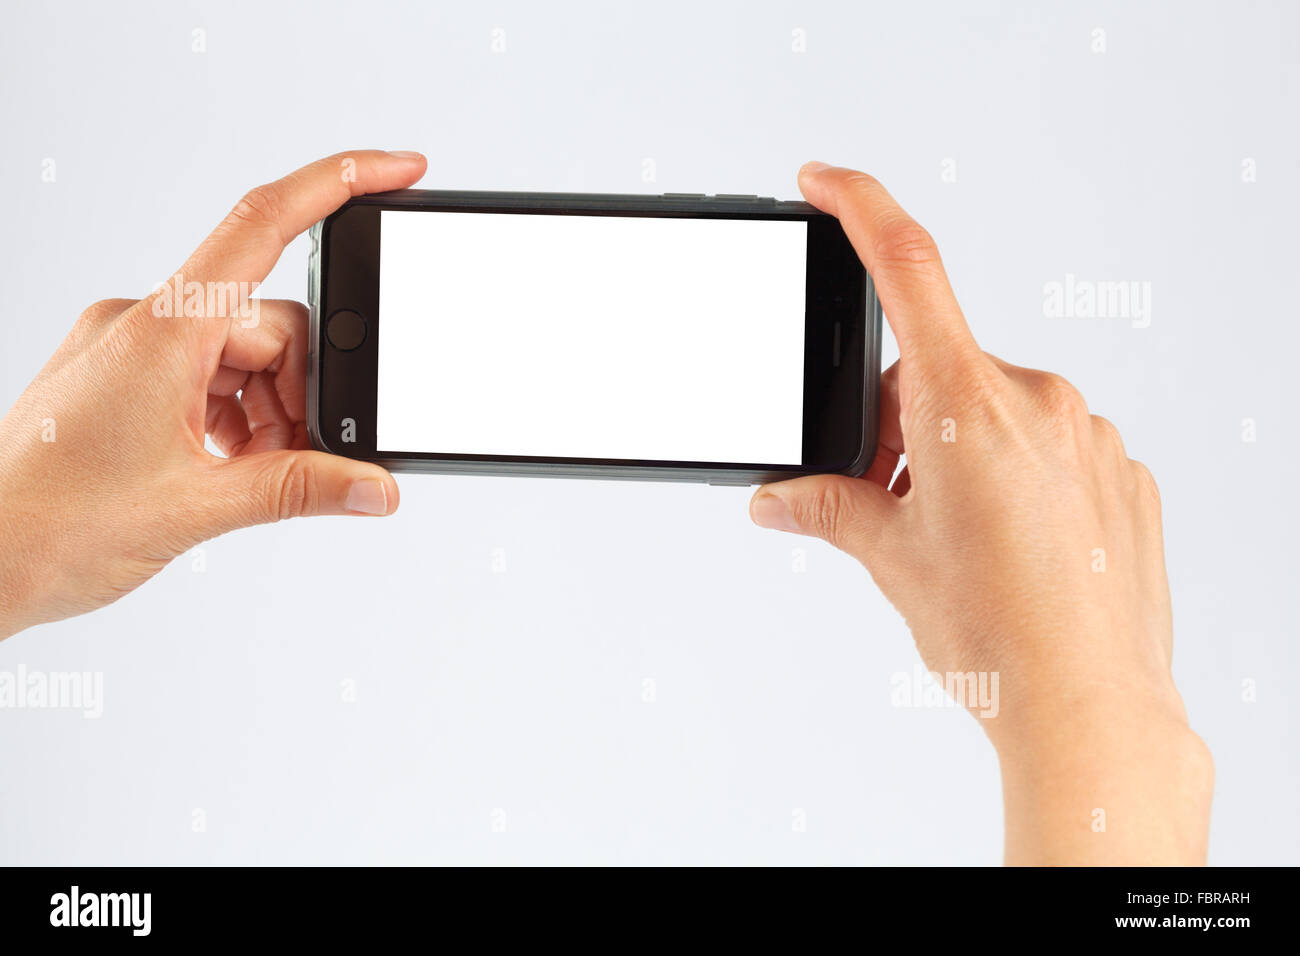 Weibliche Hände halten Handys in horizontaler Ausrichtung. Isoliert auf weiß mit weißer Bildschirm. Stockfoto